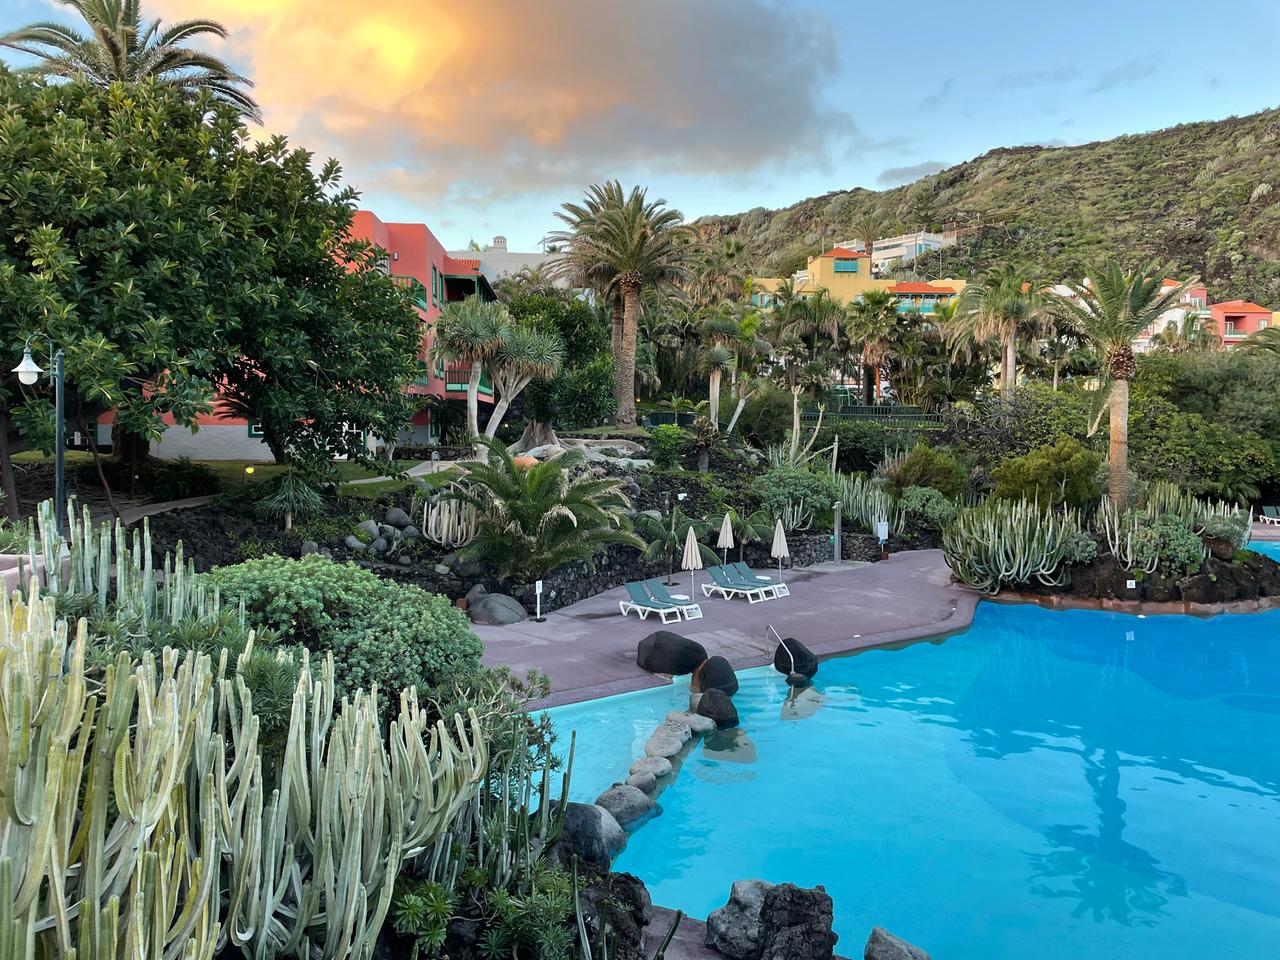 Ein idyllischer Hotelpool mit Palmen und Liegen drumherum. Im Hintergrund der vom Vulkan rotgefärbte Himmel.